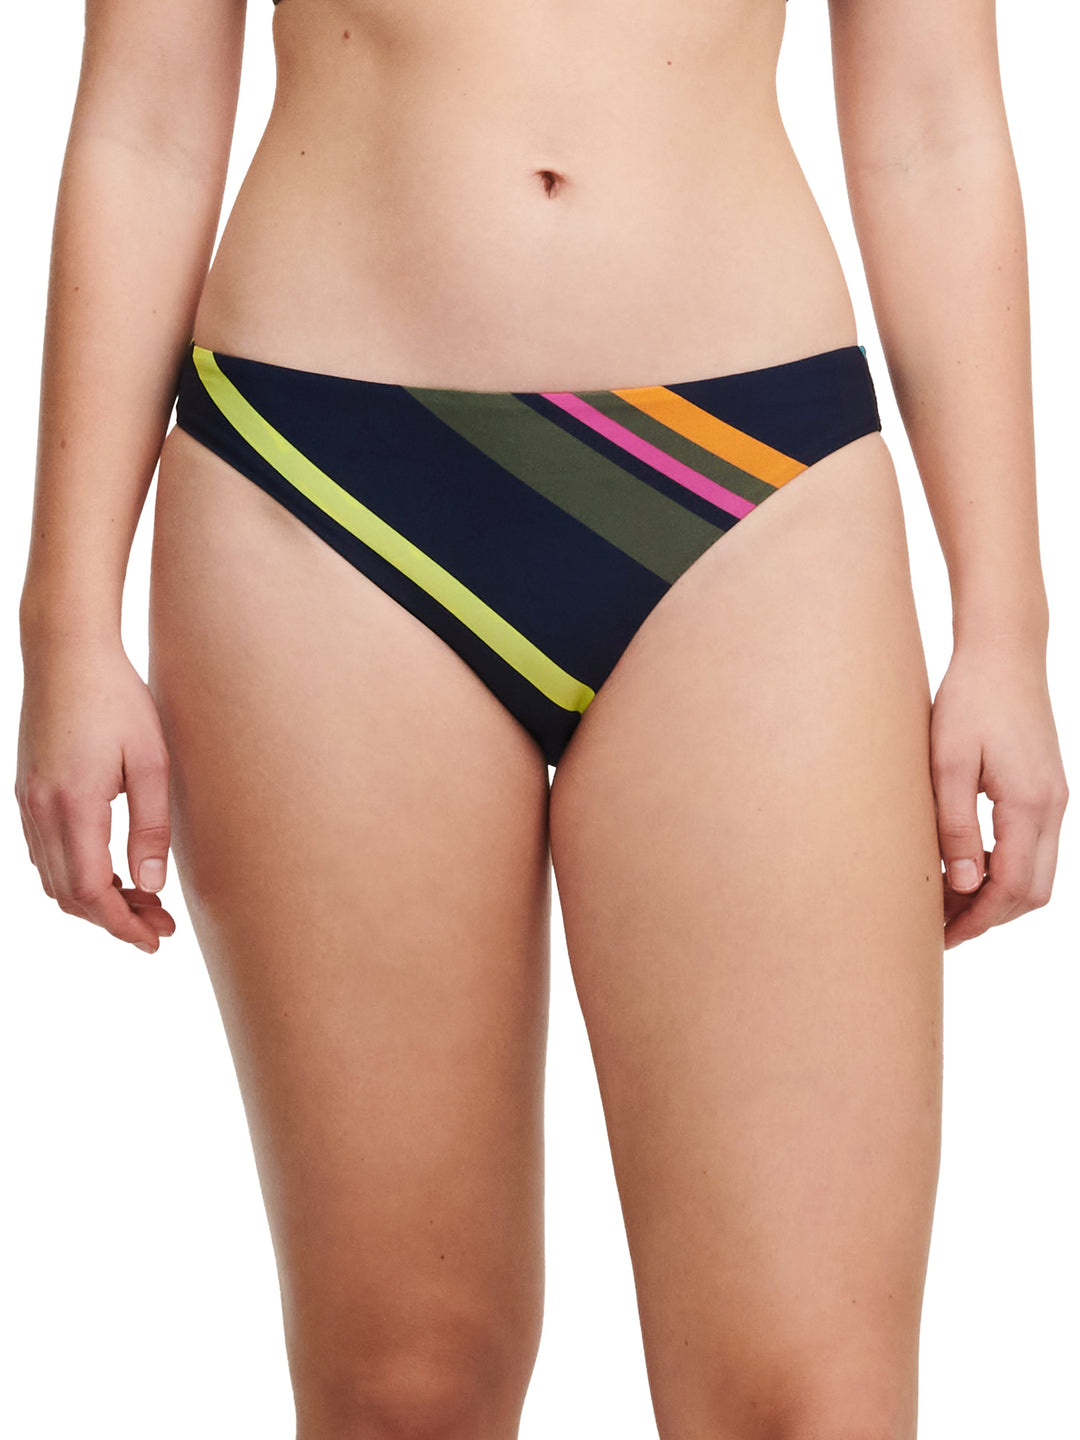 Chantelle Swimwear Identity Brief - Colorful Stripes Bikini Brief Chantelle 